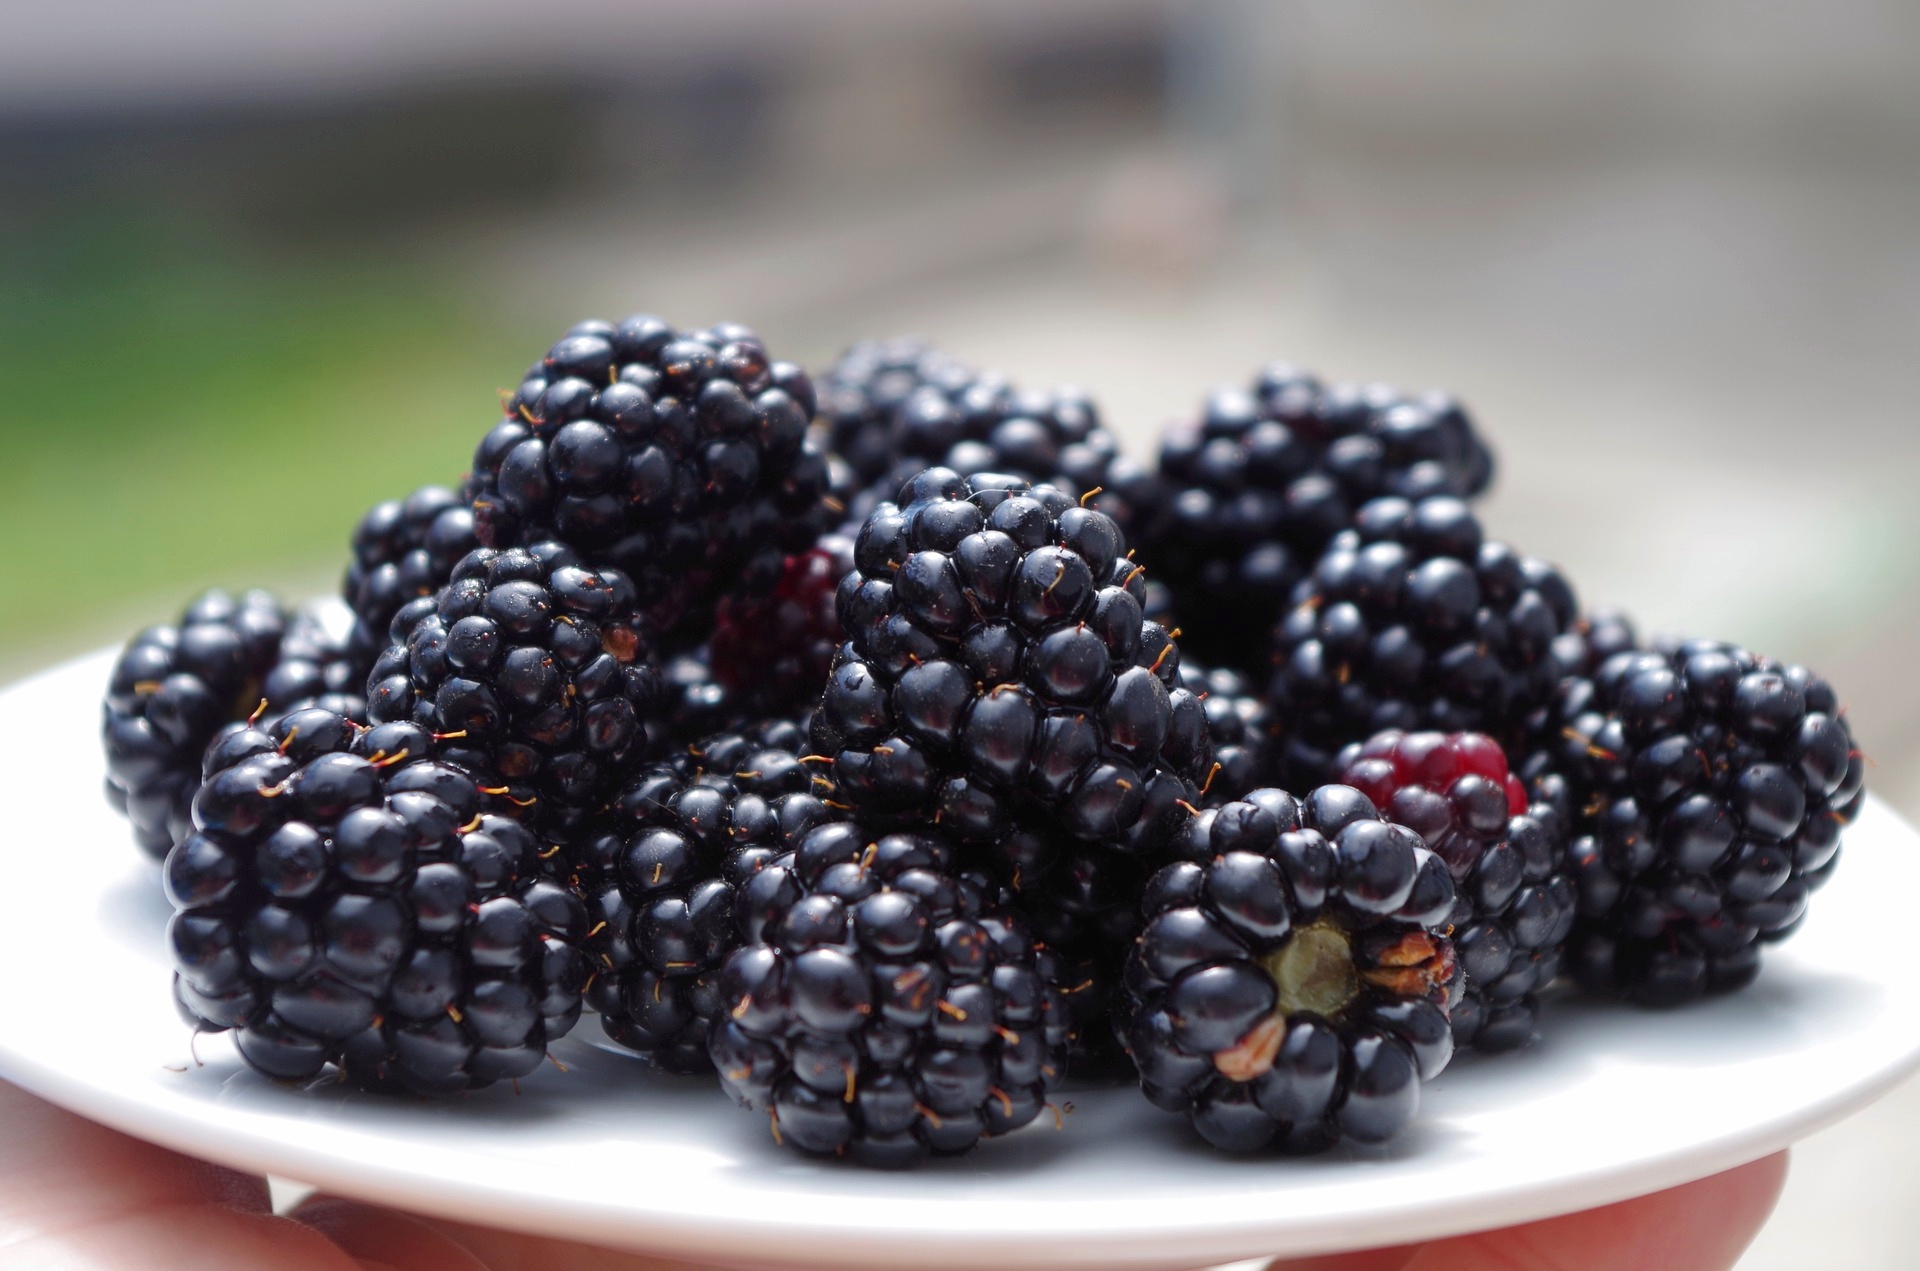 Blackberries: Planting, Growing, and Harvesting Blackberries | The ...